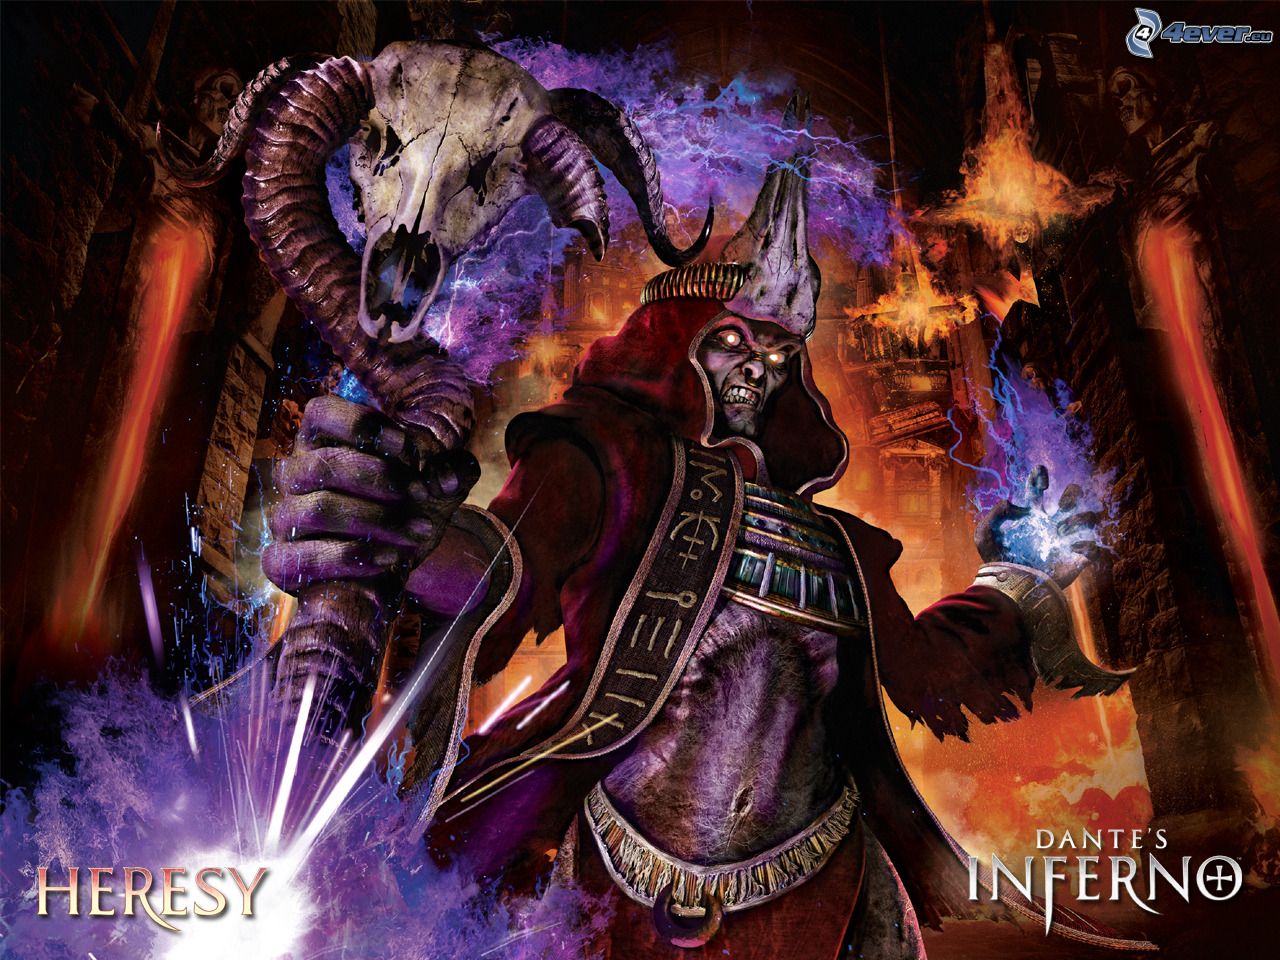 Dante's Inferno PC Download (Full Version)